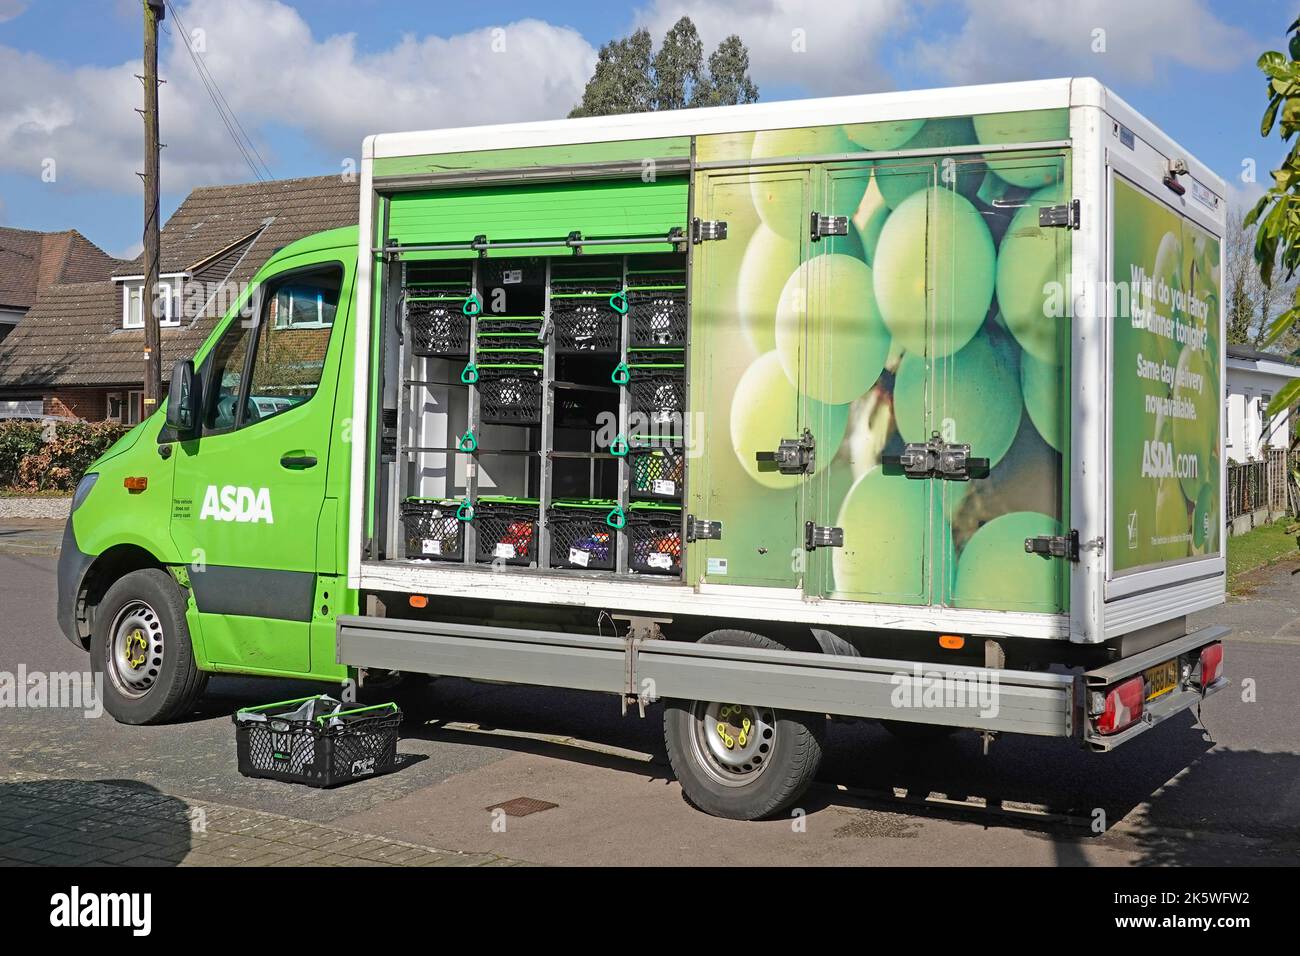 Asda Supermarkt grün Haus einkaufen Lieferwagen unbeaufsichtigt offene Seite Street View Kiste Regale mit vorbestellten Online-Lebensmittel Essex England UK Stockfoto